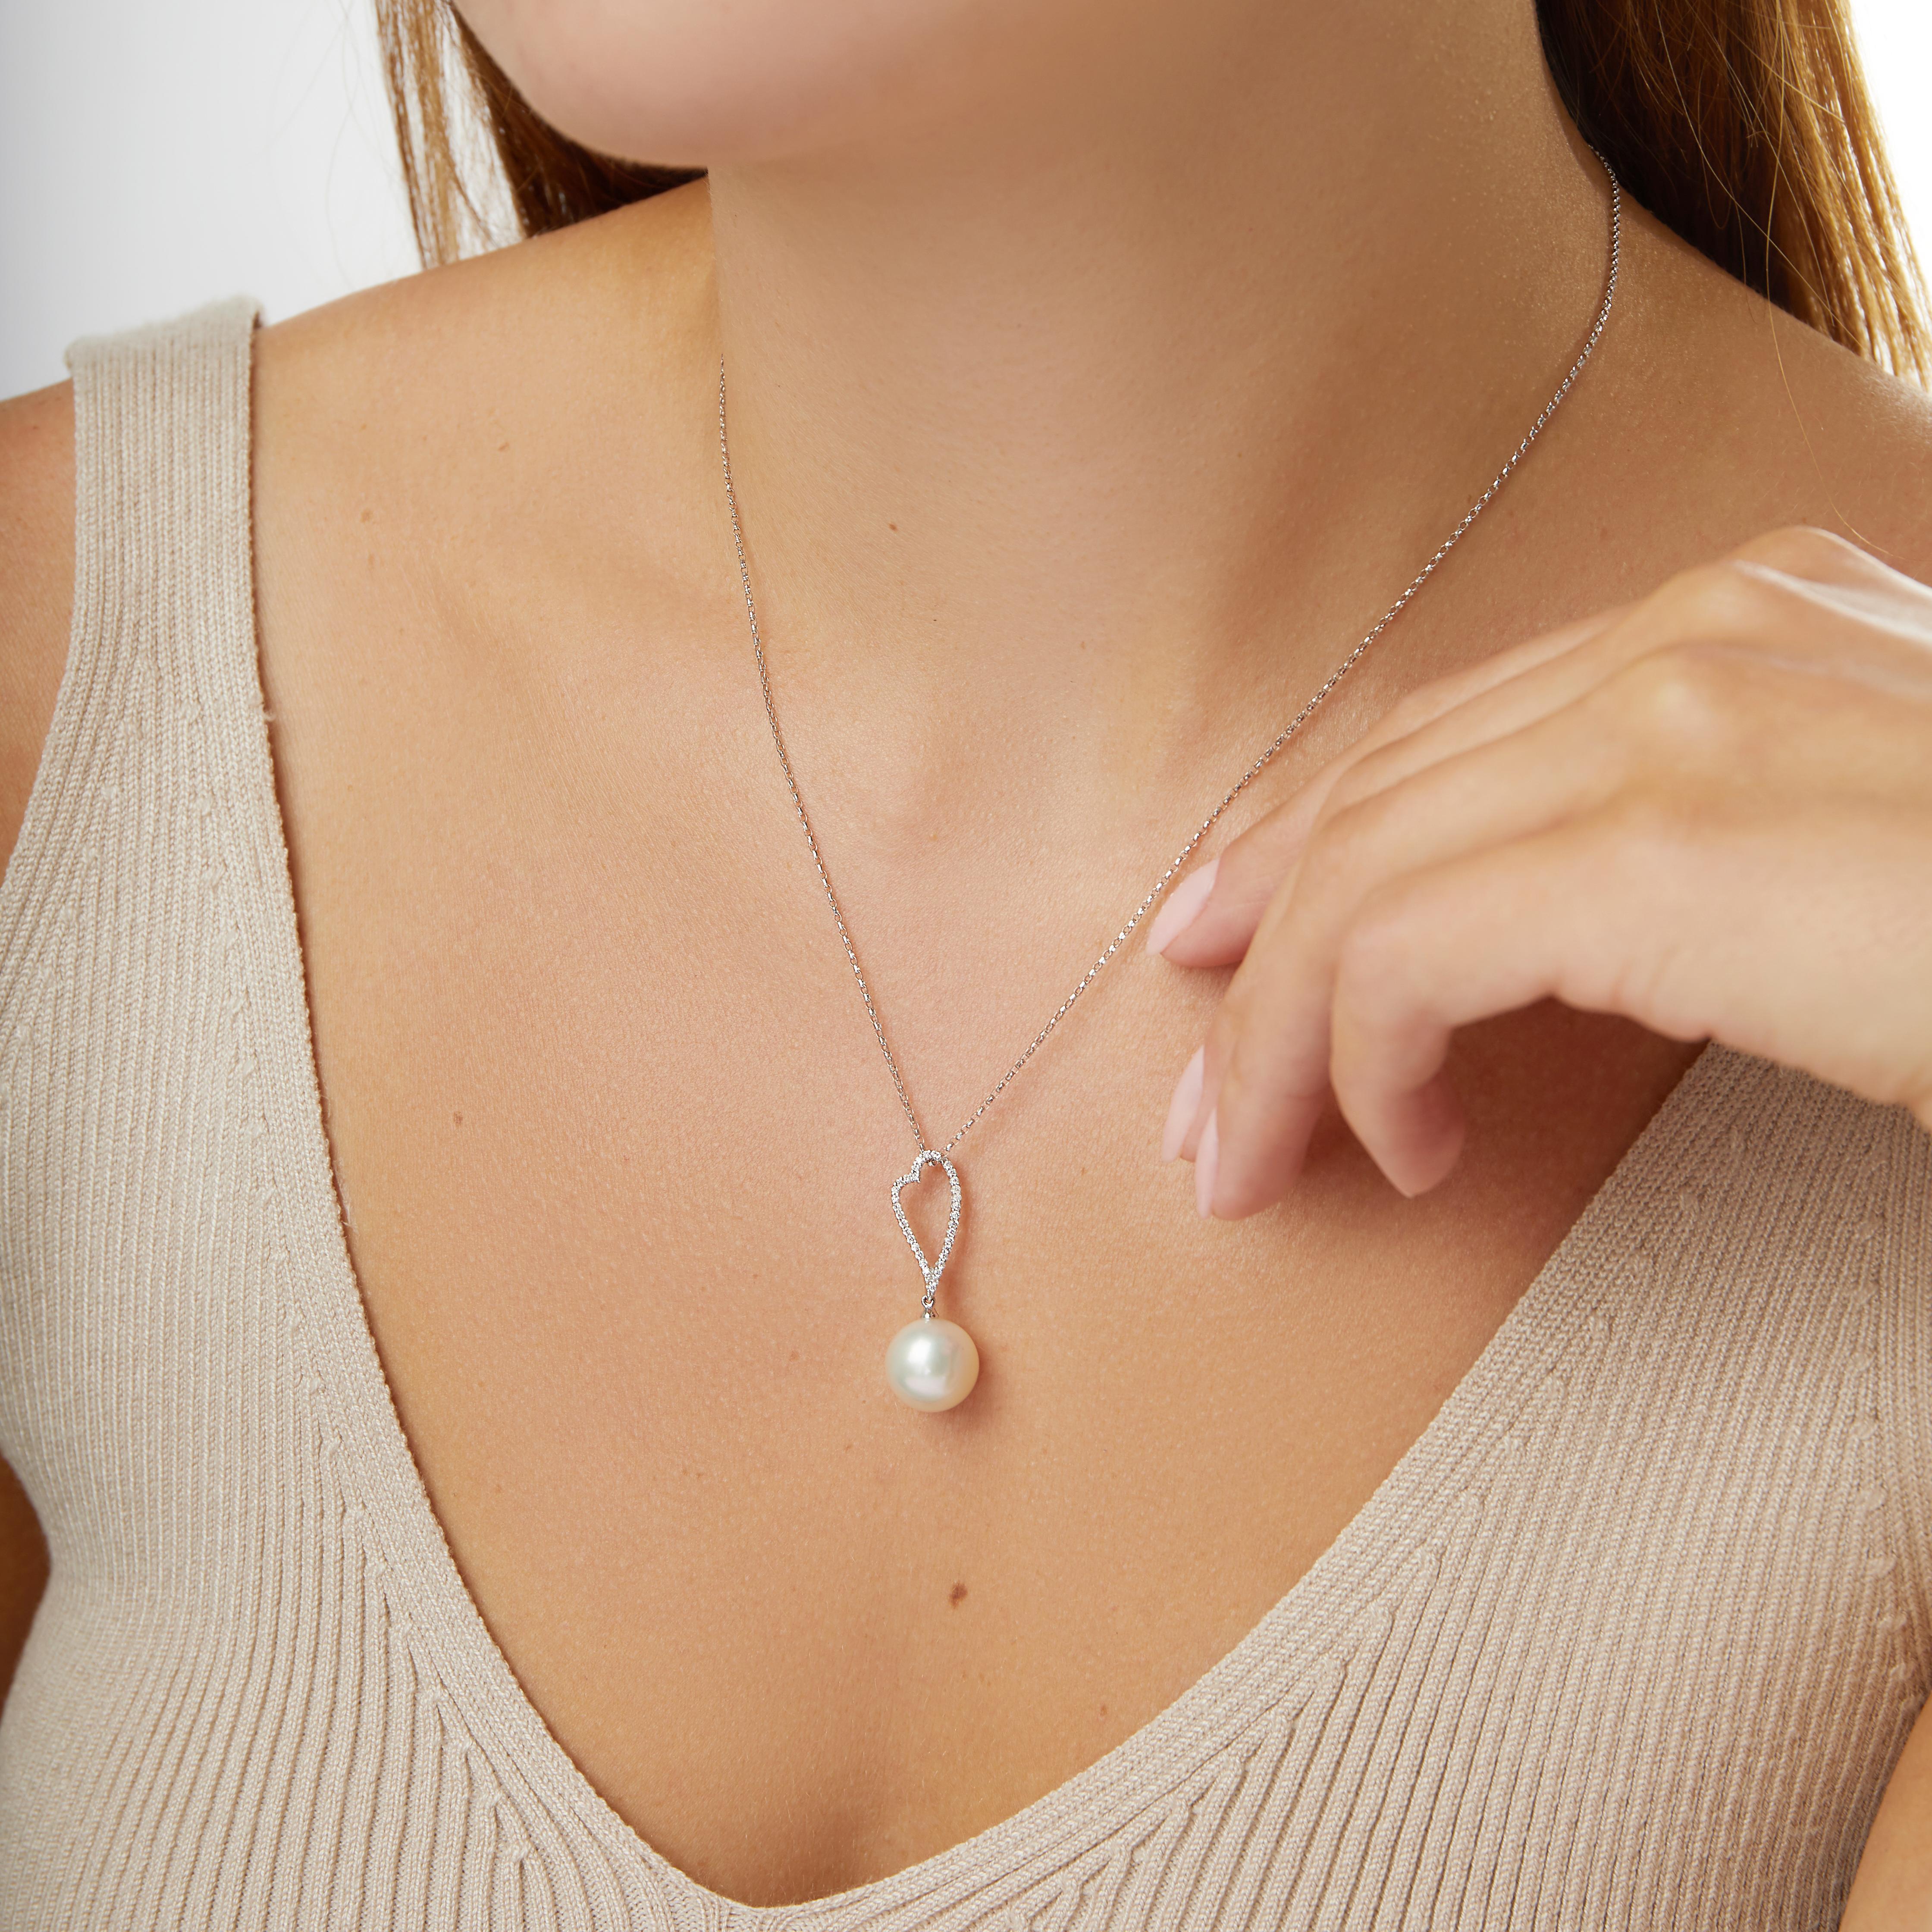 Ce pendentif ludique de Yoko London présente une perle des mers du Sud lustrée sous un motif de cœur en diamant. Serti en or blanc 18 carats pour mettre en valeur le lustre de la perle et l'éclat des diamants. Ce magnifique pendentif serait un